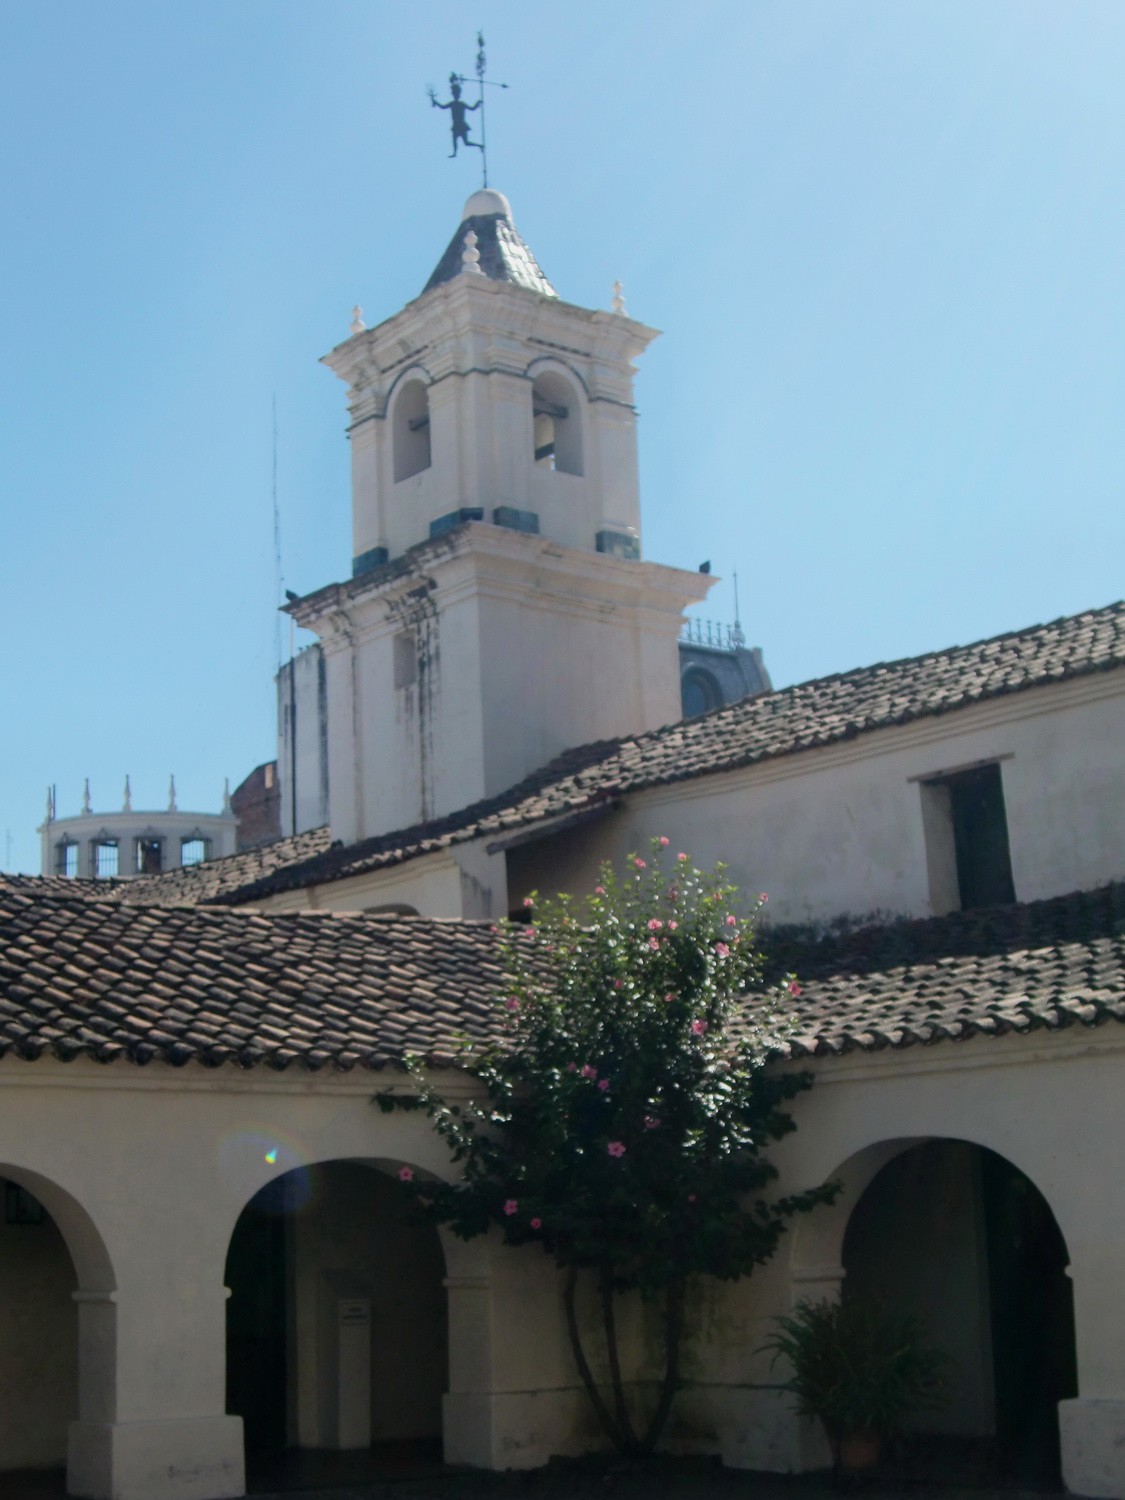 Tower of the Cabildo